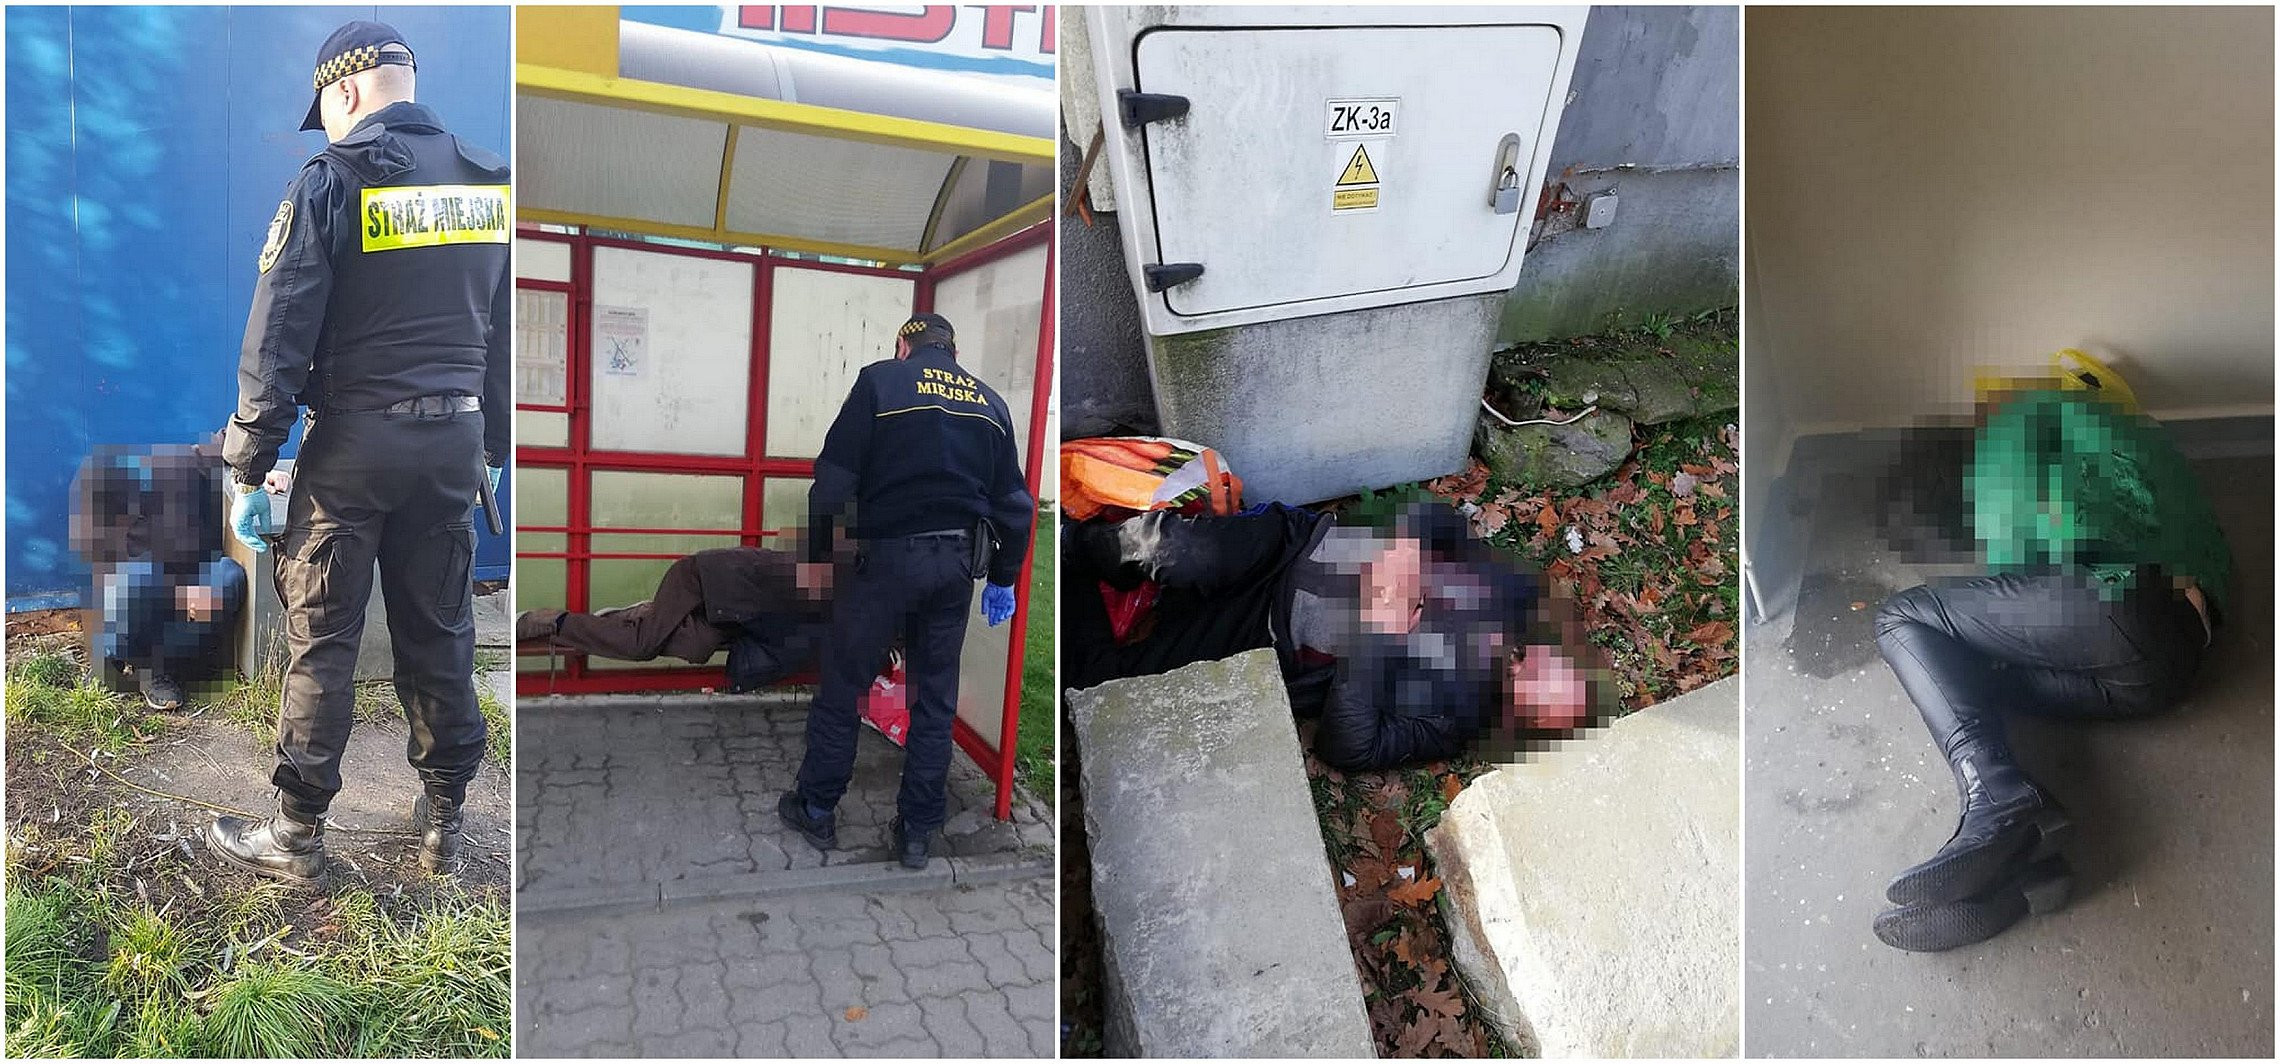 Inowrocław - Wciąż interweniują wobec leżących na ulicy